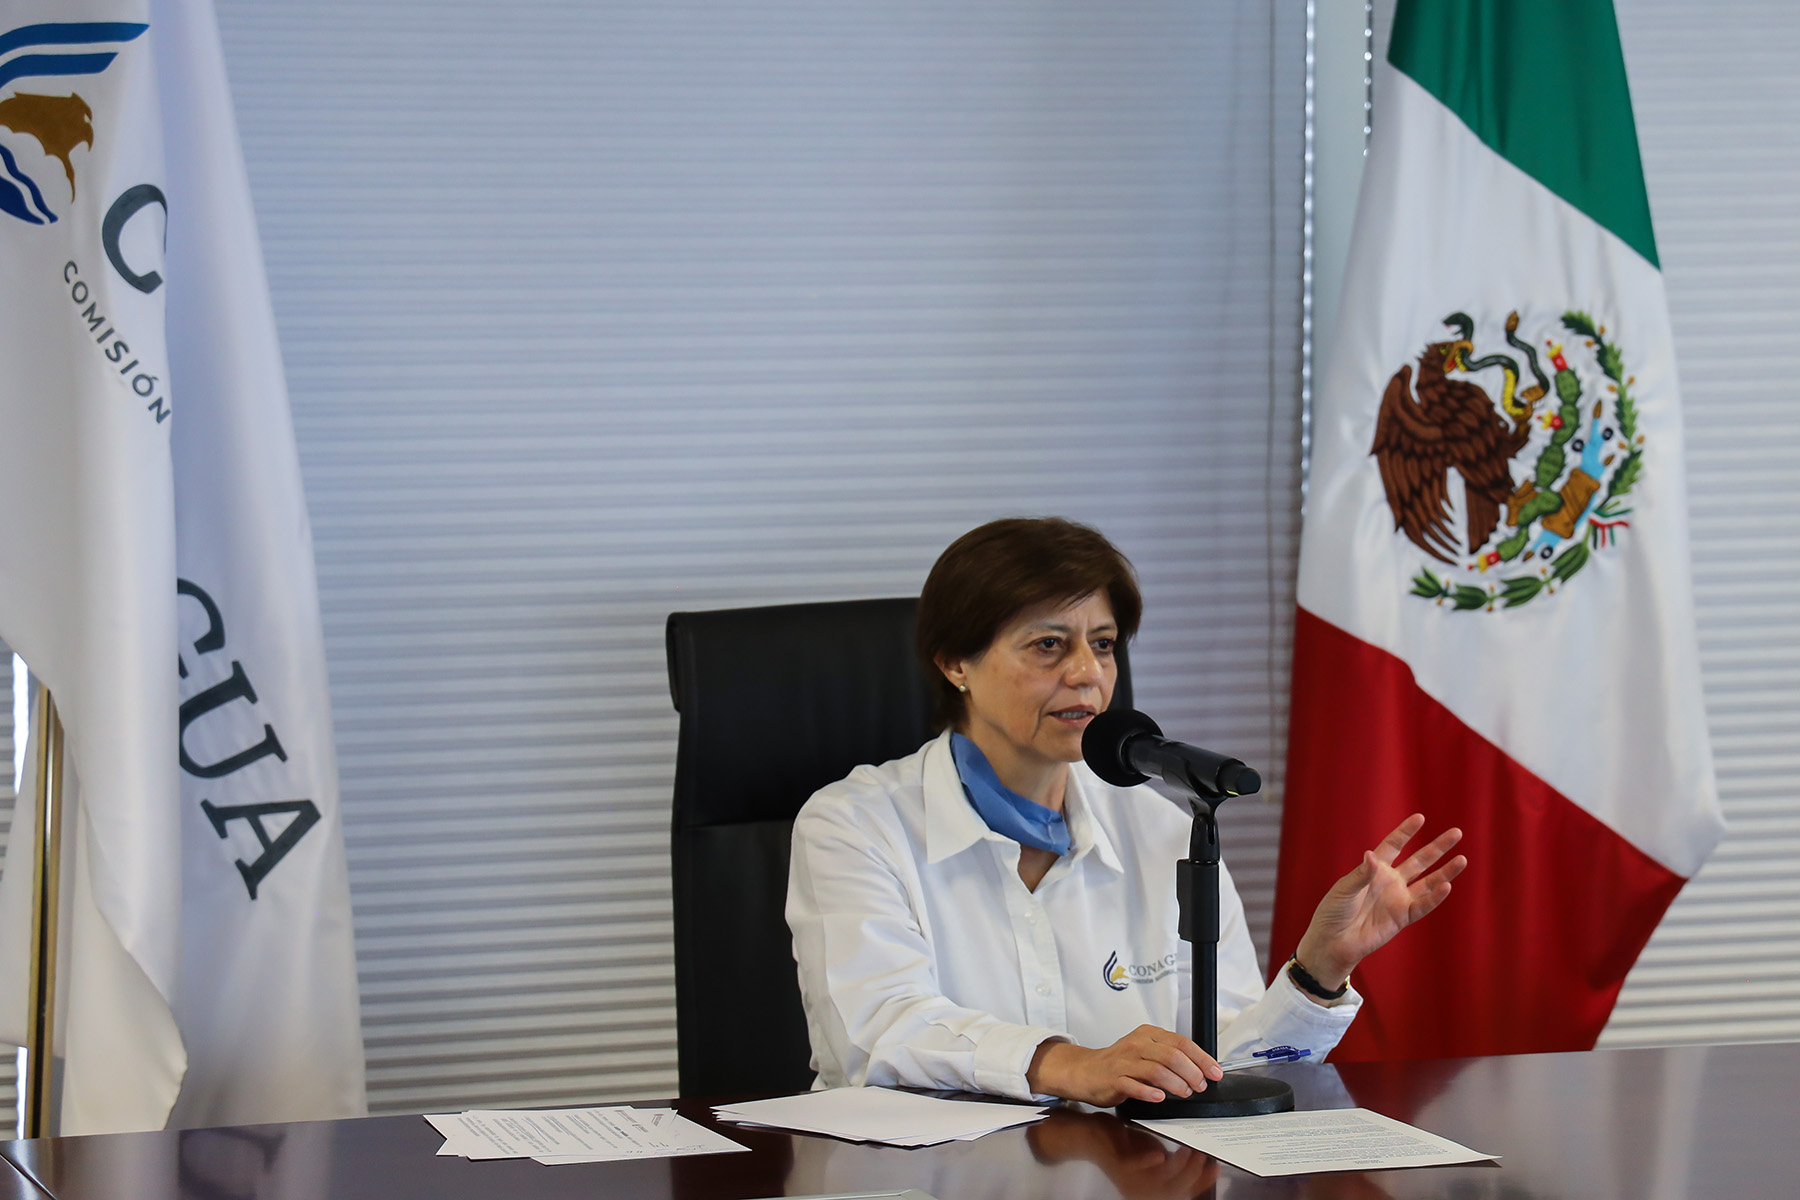 Blanca Jiménez Cisneros, directora general de Conagua participó en la videoconferencia El agua y la contingencia sanitaria: seguridad alimentaria, energética e hídrica.